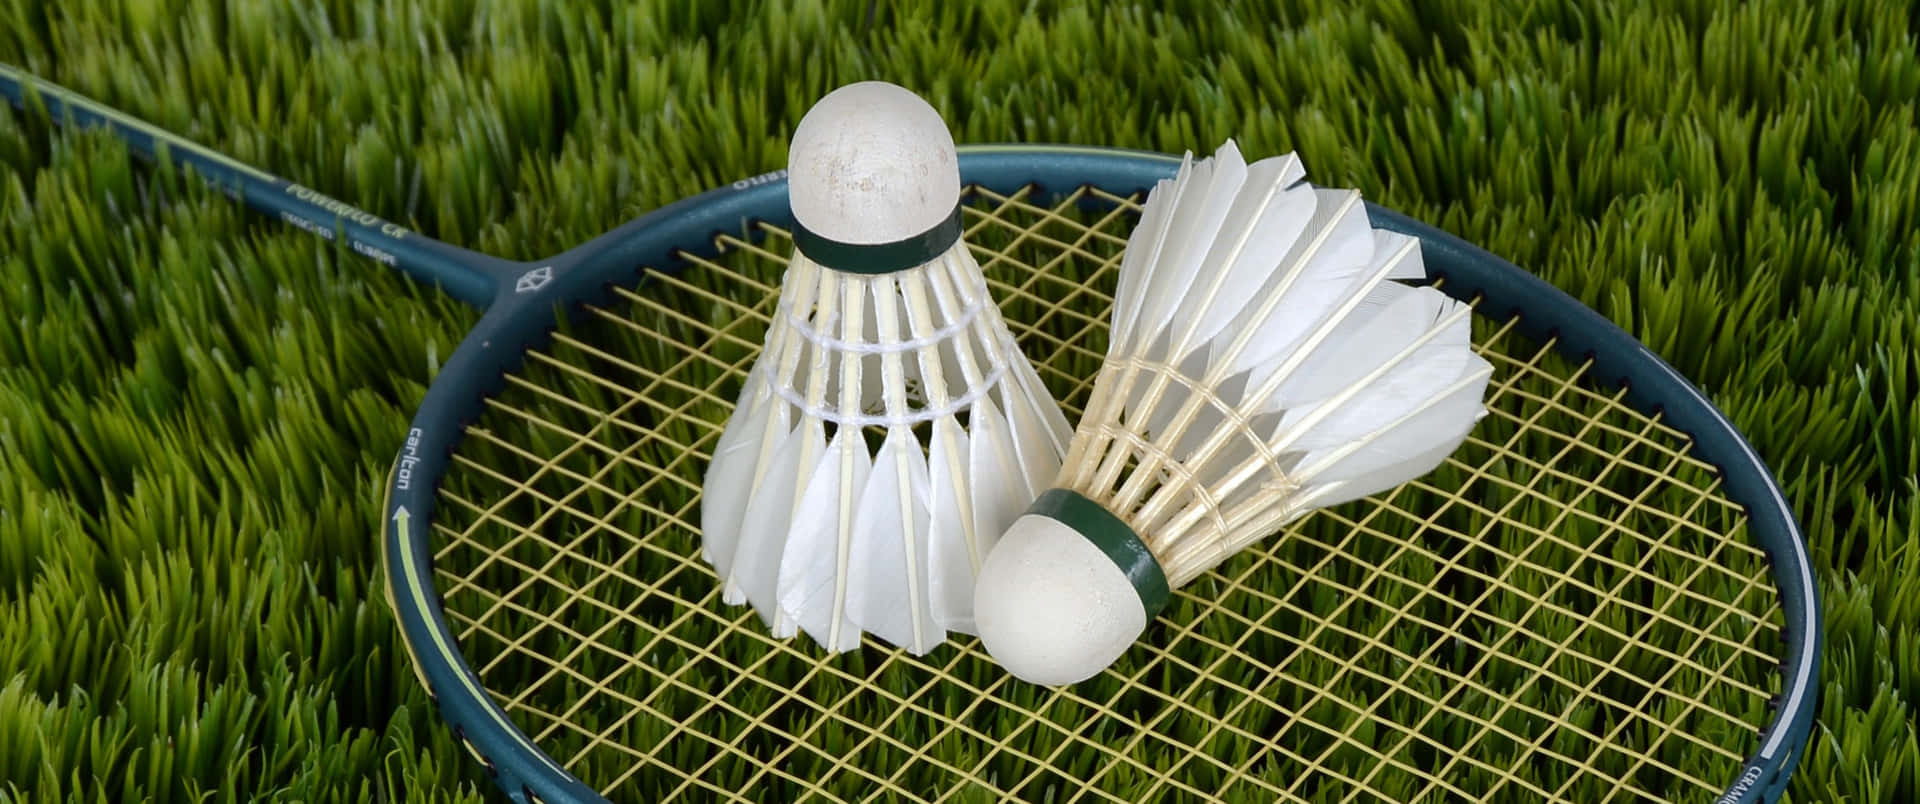 Badmintonflugaoch Racket På Gräs